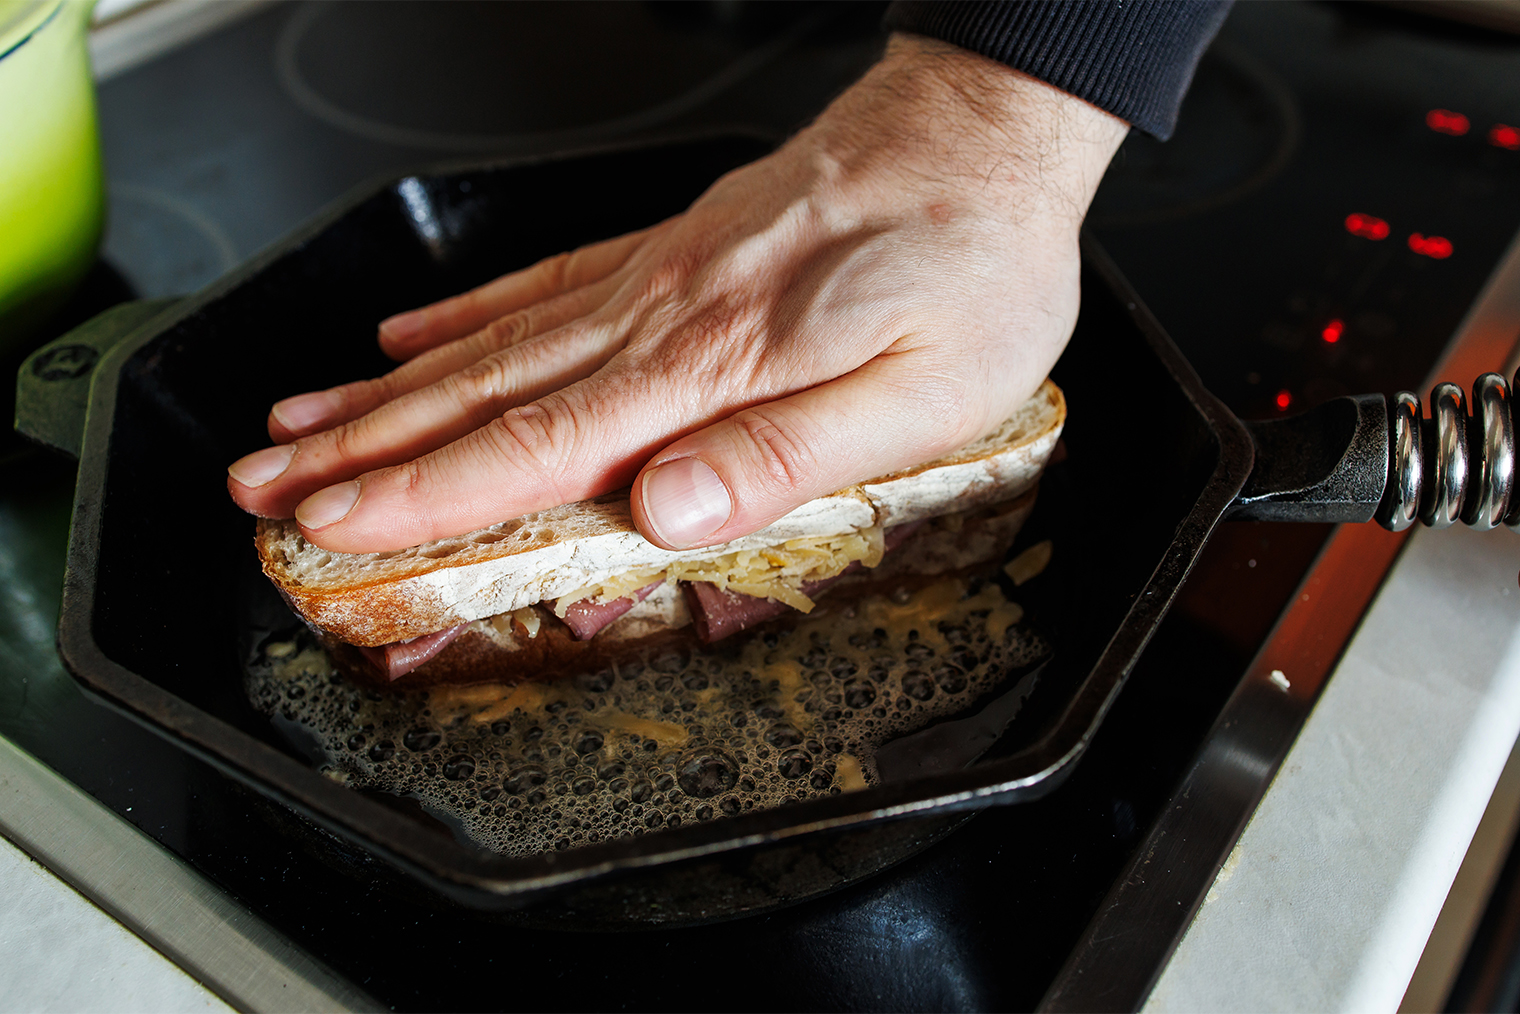 Шаг 4. Разогрейте сковороду, добавьте сливочное масло. Собранный сэндвич выложите на сковороду и прижмите рукой или лопаткой ко дну — так у тартина будет хрустящая румяная корочка. Иногда шеф прижимает крок⁠-⁠мадам второй тяжелой сковородкой